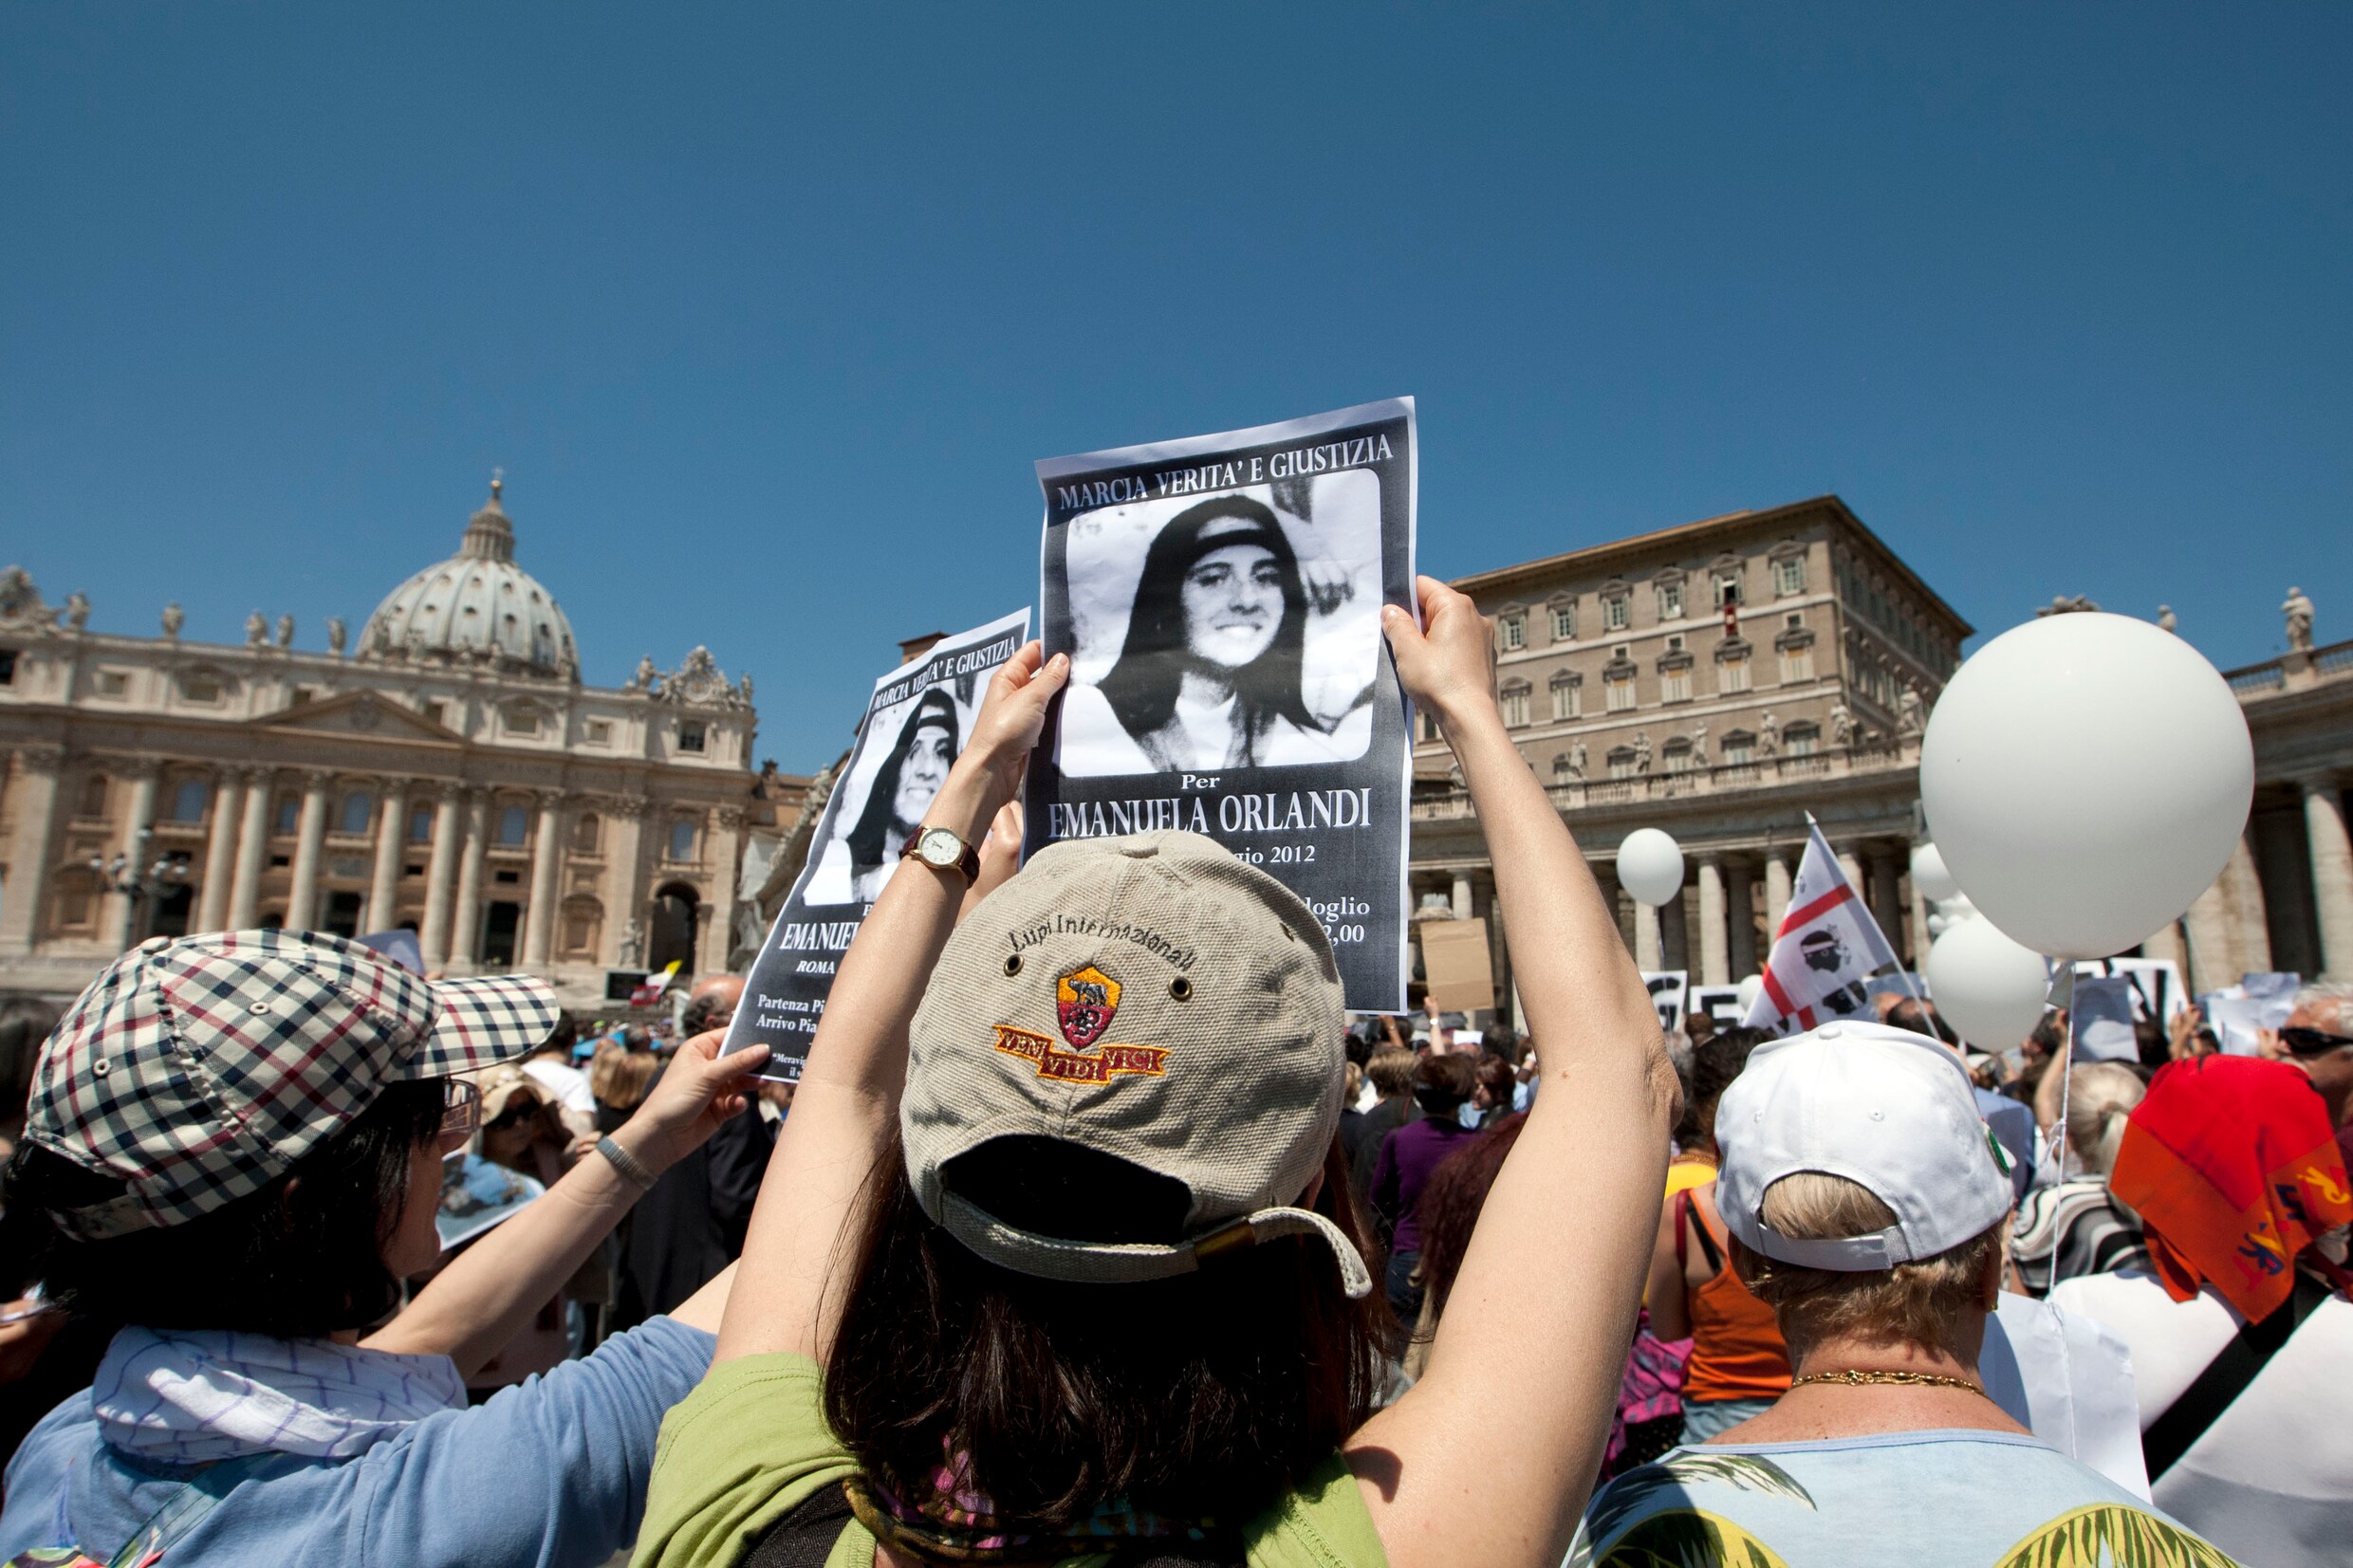 Vaticaan: geen link tussen beenderen in kerkhof en sinds 1983 vermiste tiener